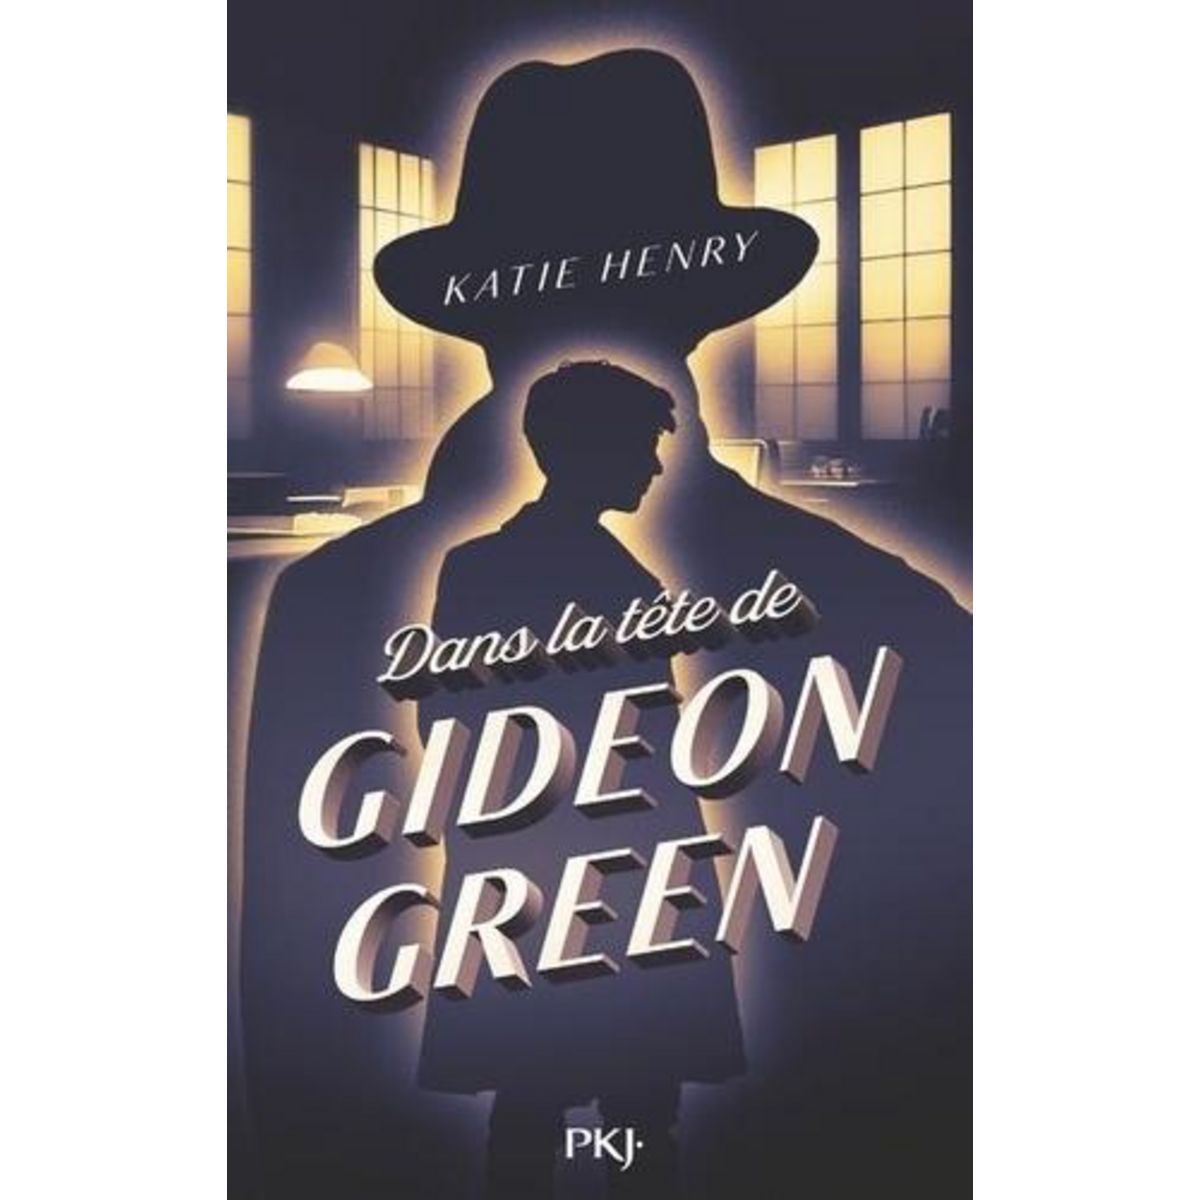  DANS LA TETE DE GIDEON GREEN, Henry Katie